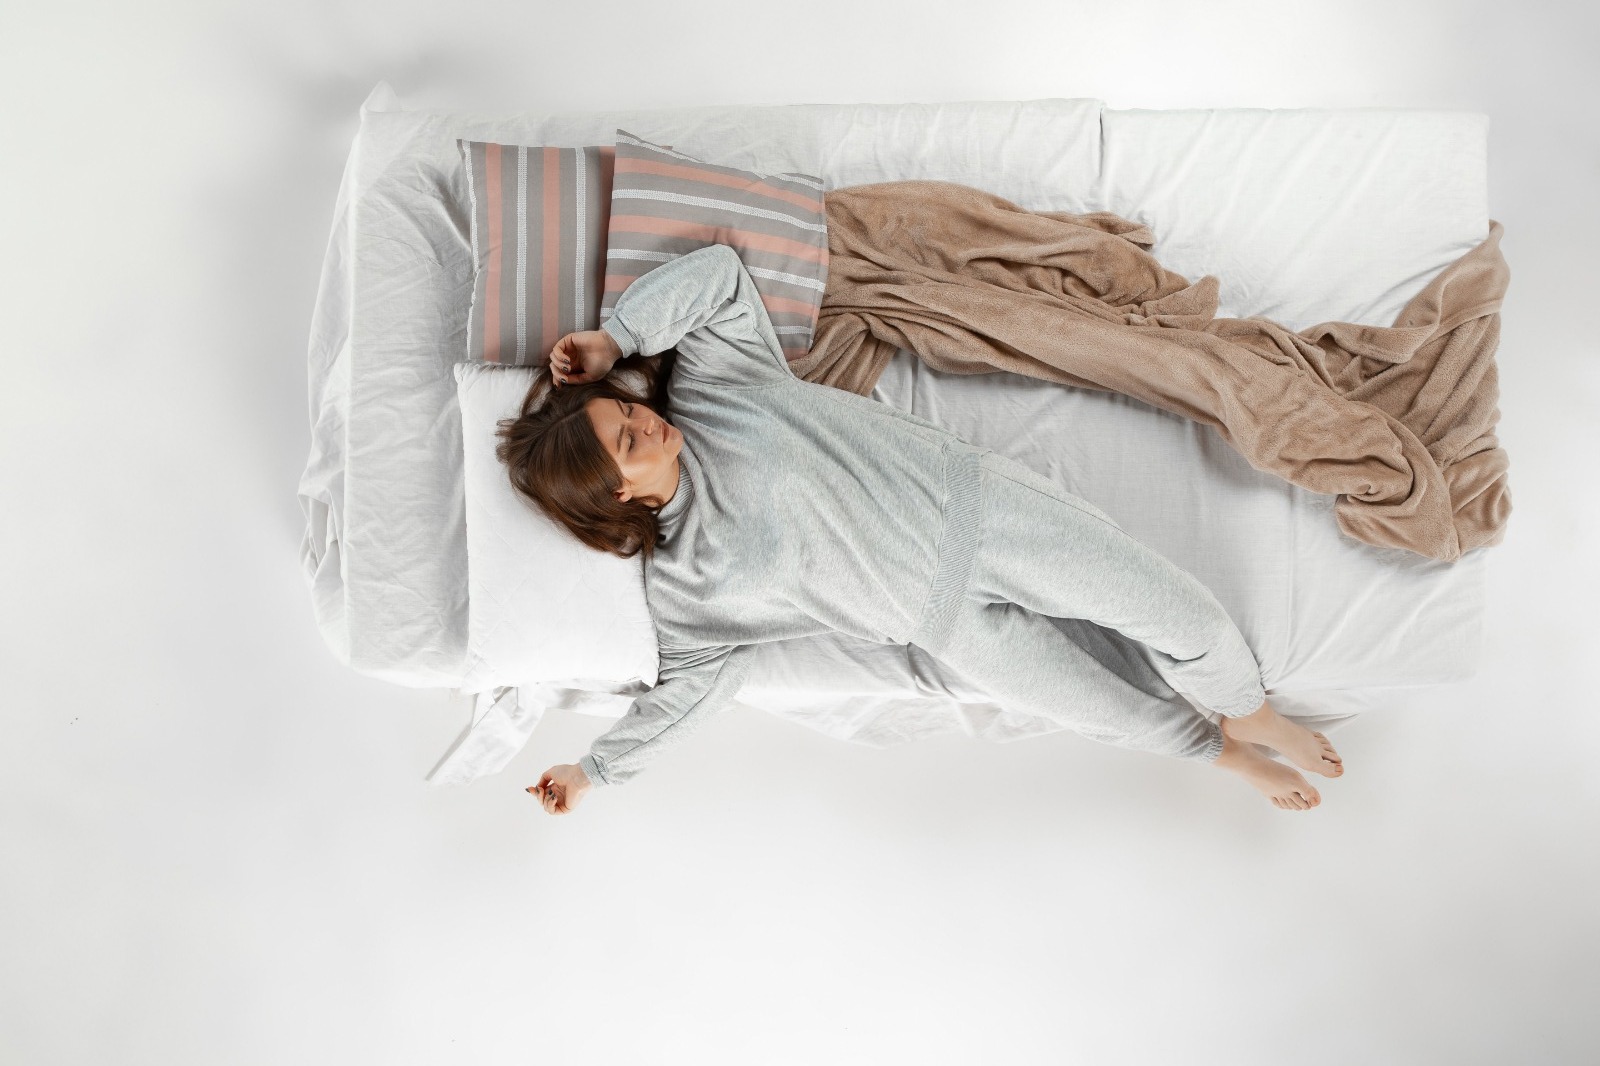 Sering Mimpi Jatuh dari Tempat Tidur? Ketahui Arti beserta Mitos dan Faktanya (ilustrasi: Freepik)